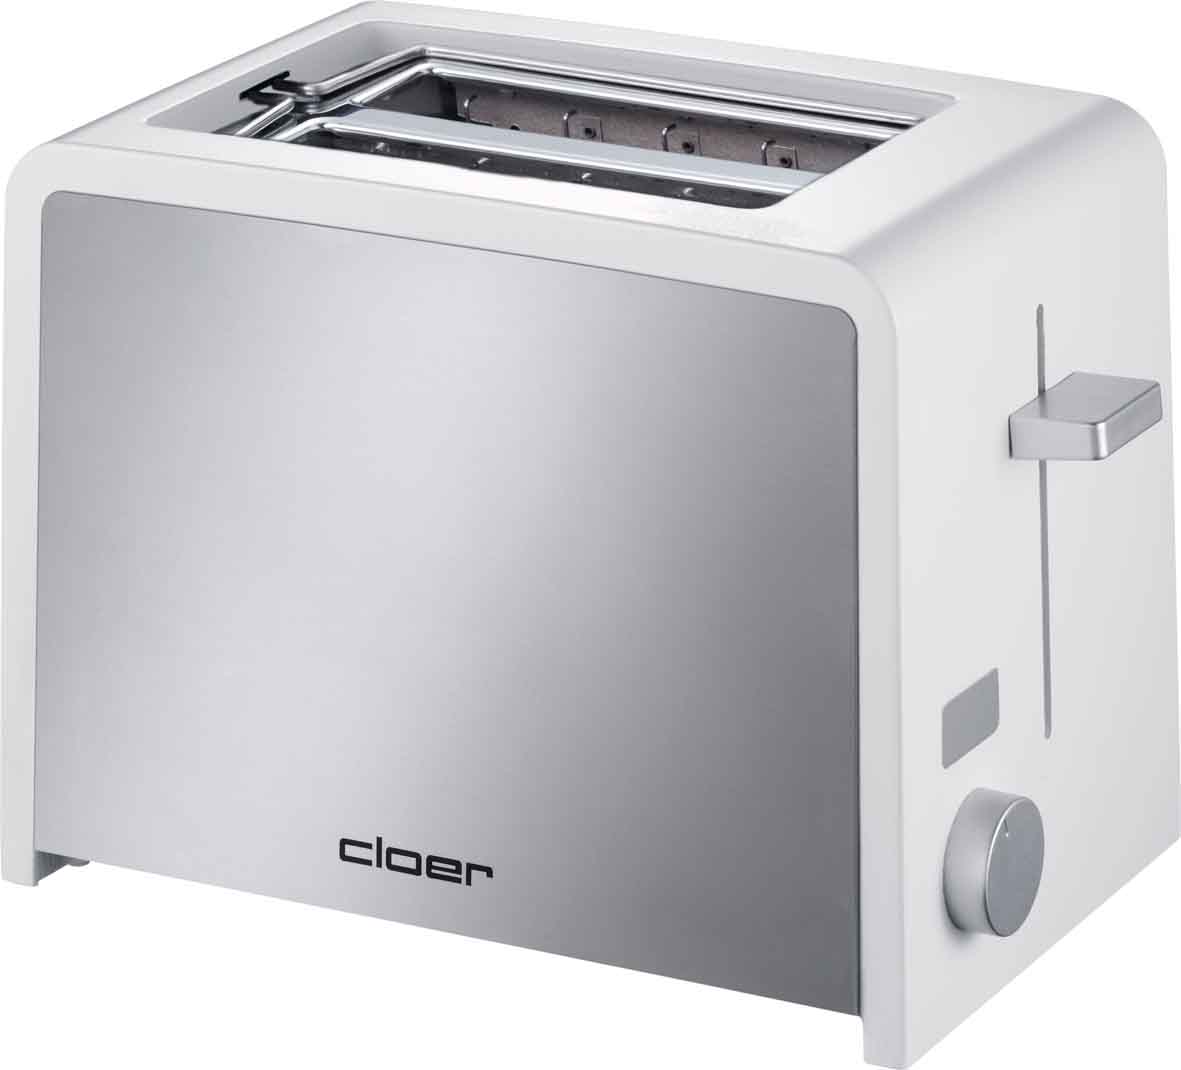 Cloer Toaster 2 Scheiben 3211 eds/ws